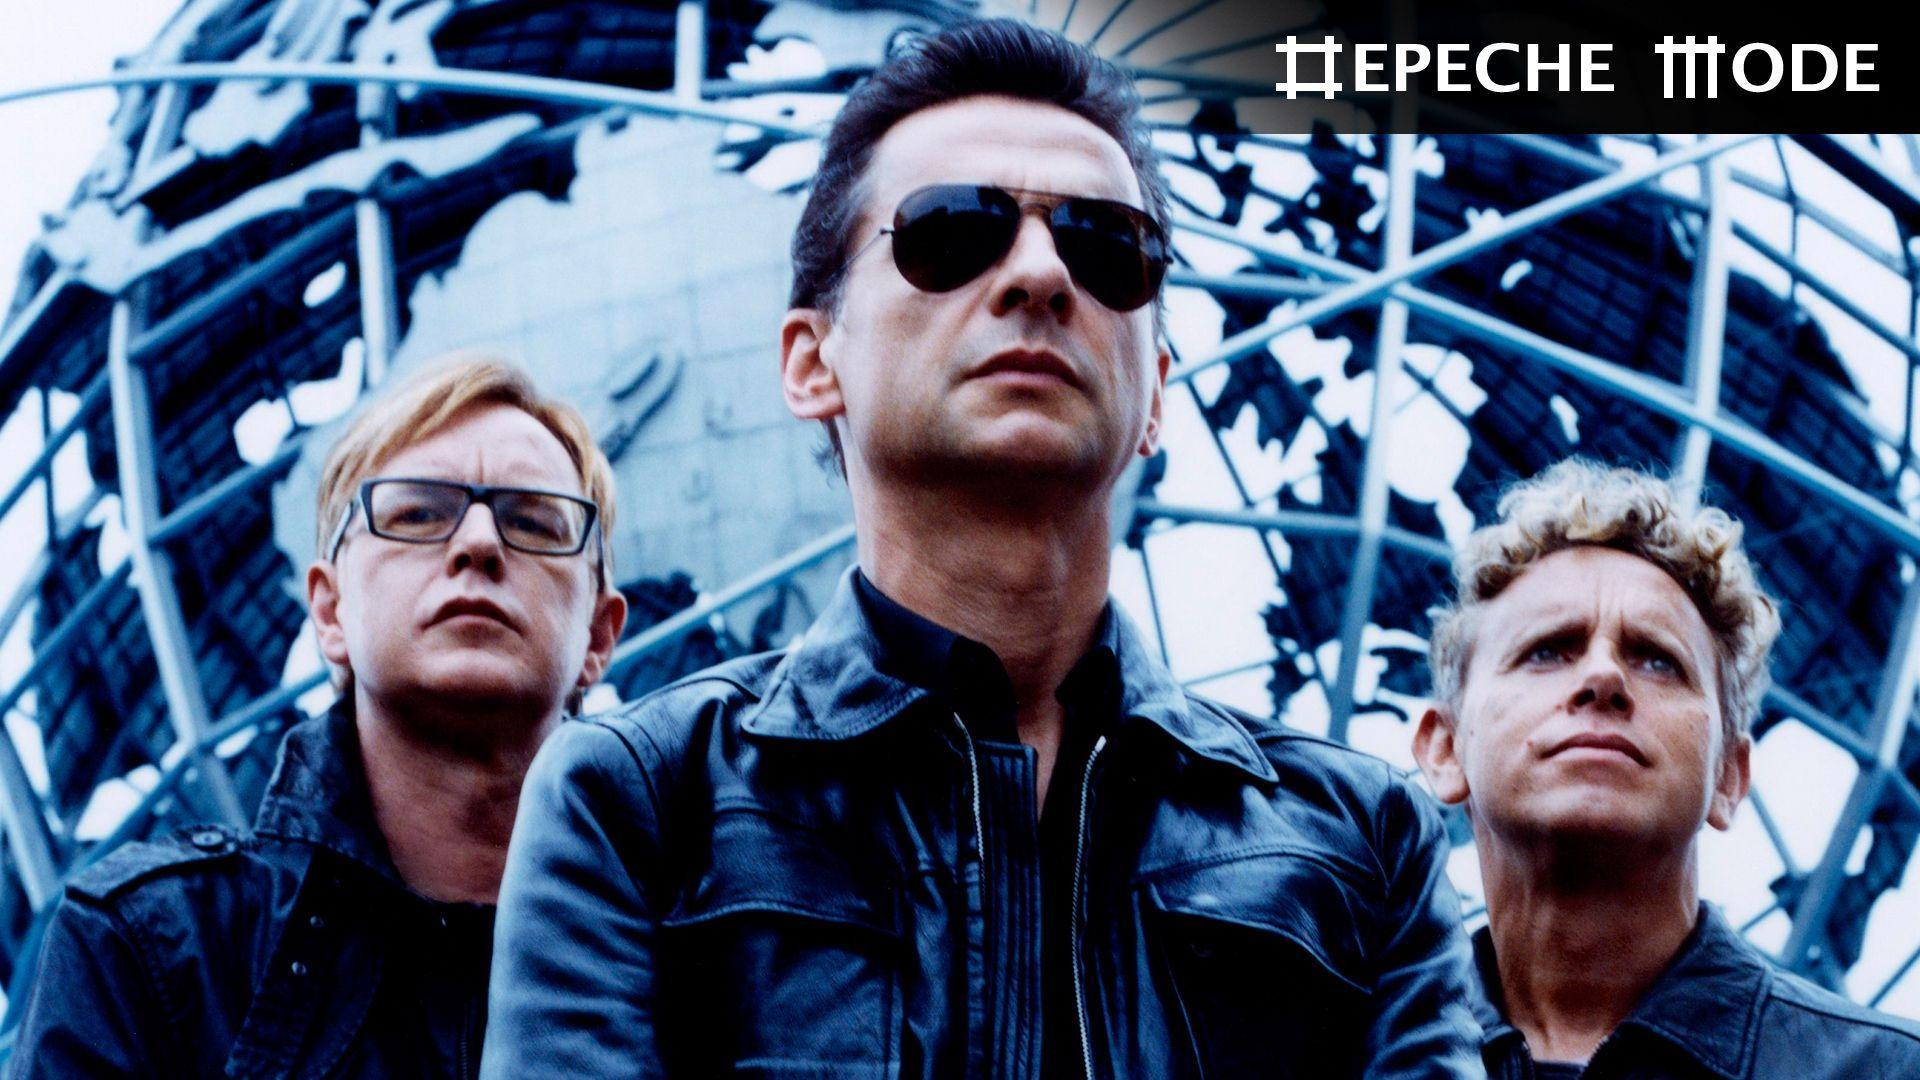 Depeche Mode Wallpaper,